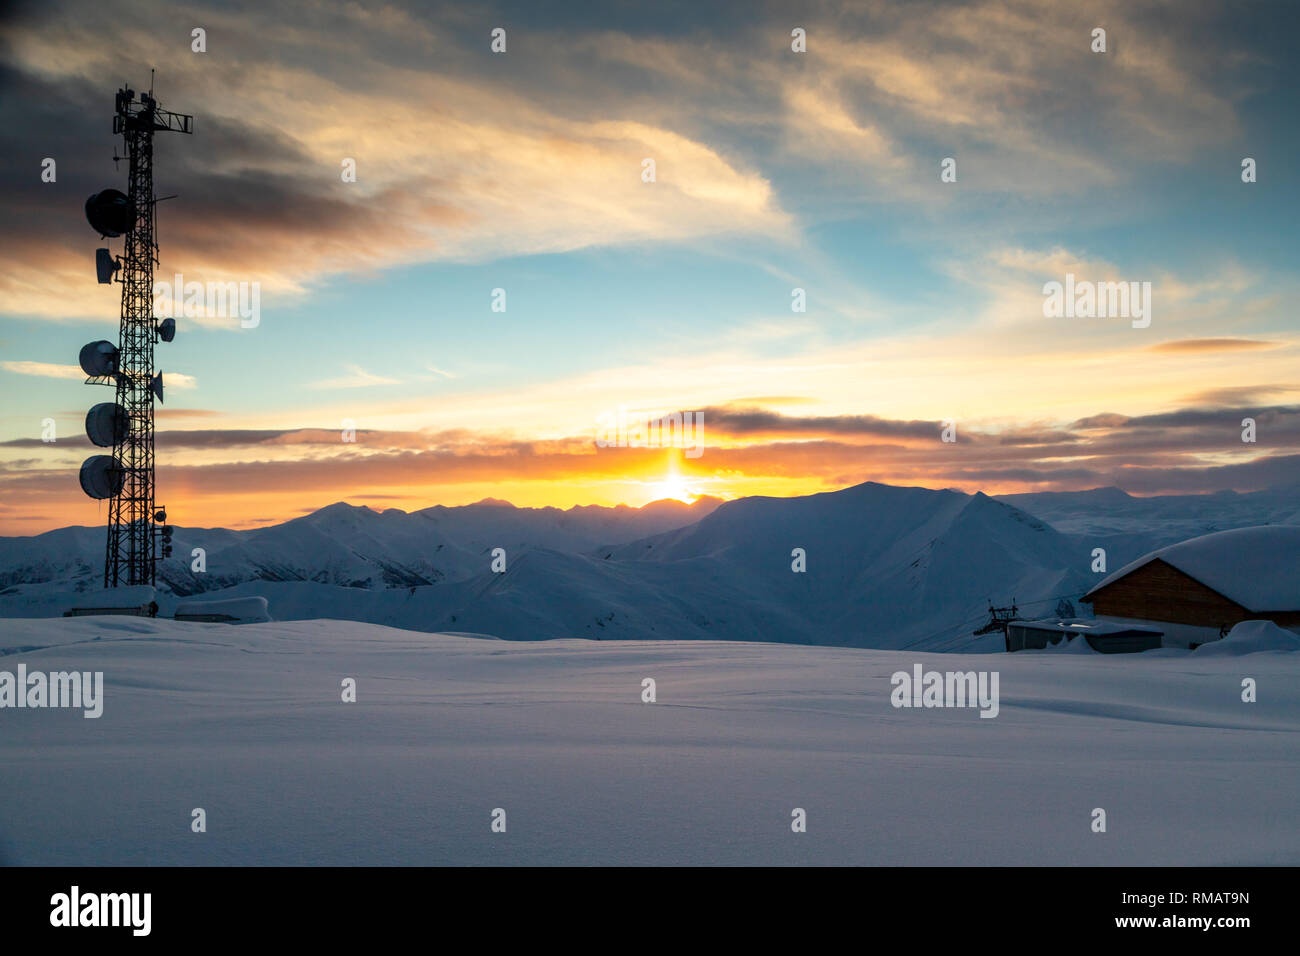 Tour de communication avec les antennes et paraboles à l'arrière-plan d'un paysage de montagne en hiver, au coucher du soleil. Gudauri, Géorgie Banque D'Images